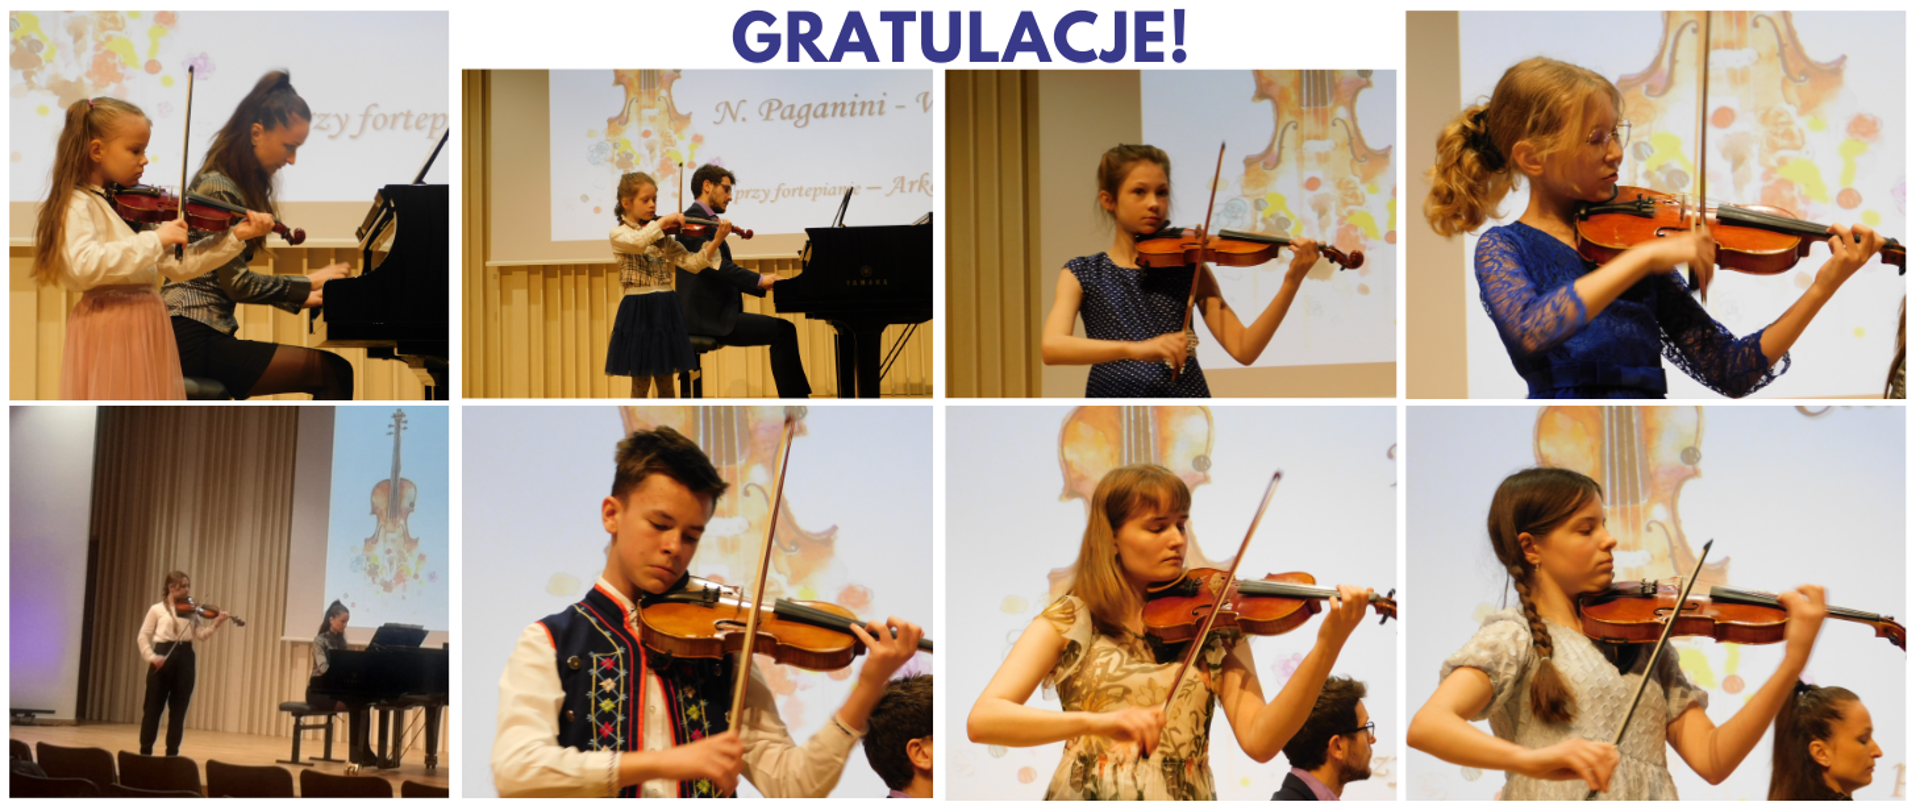 Na zdjęciu osiem ujęć ułożonych w dwóch rzędach po cztery zdjęcia. Na każdym dziecko grające na skrzypcach podczas XIV Kaszubskich Prezentacji Skrzypcowych. Na samej górze granatowy napis "gratulacje"